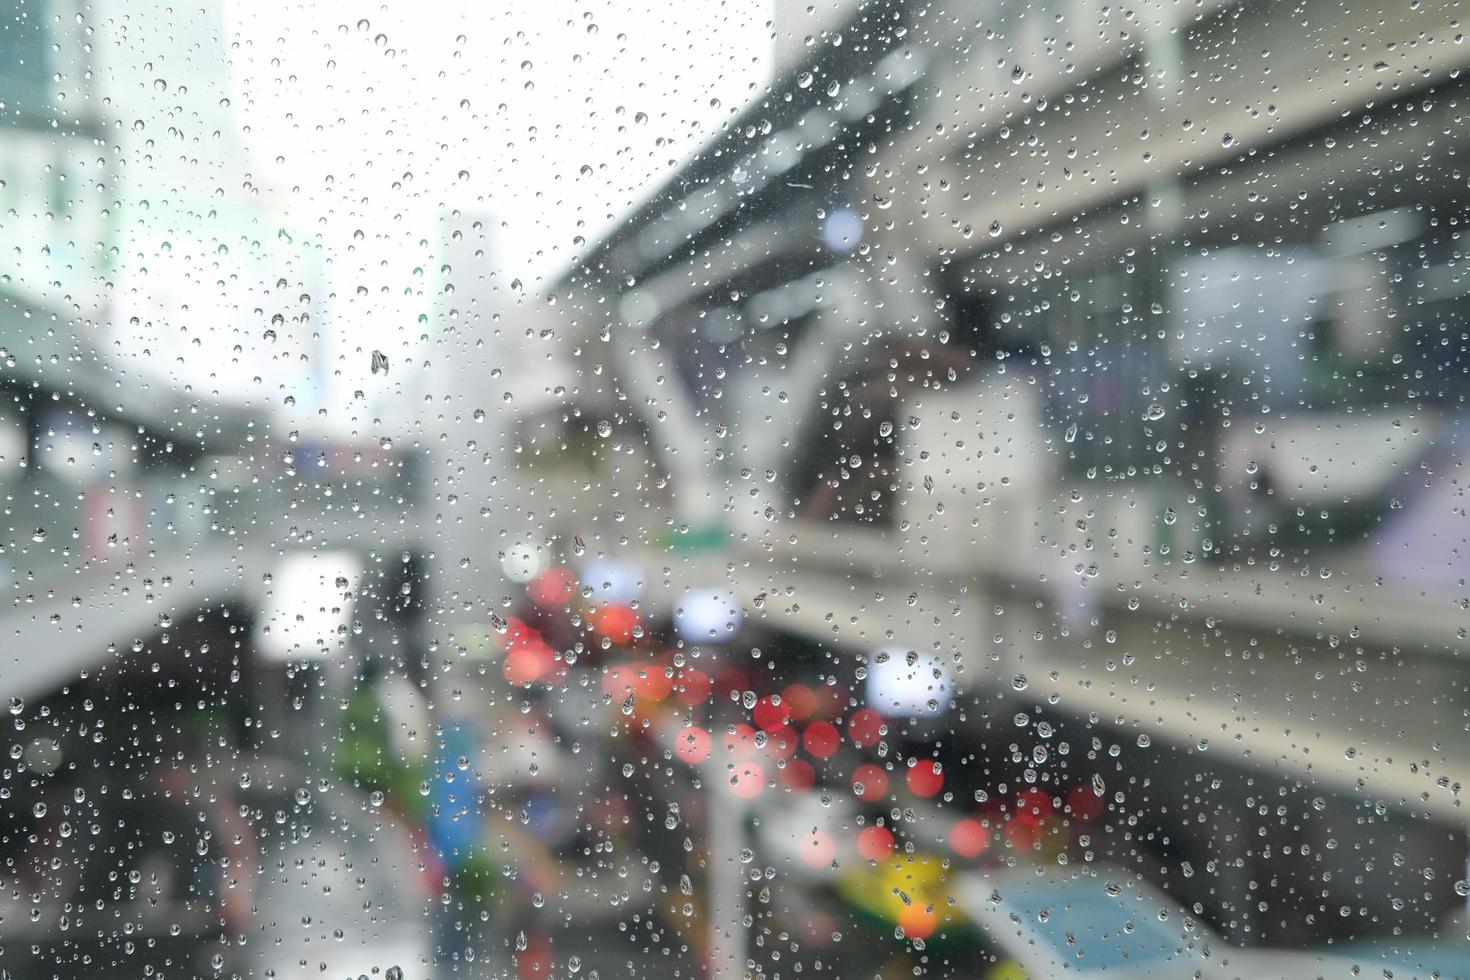 ochtend stad, uitzicht door het raam op regenachtige dag. waterdruppels op het glas op een regenachtige dag. regendruppels tijdens het regenen op een regenachtige dag buiten vensterglas met onscherpe achtergrond. foto